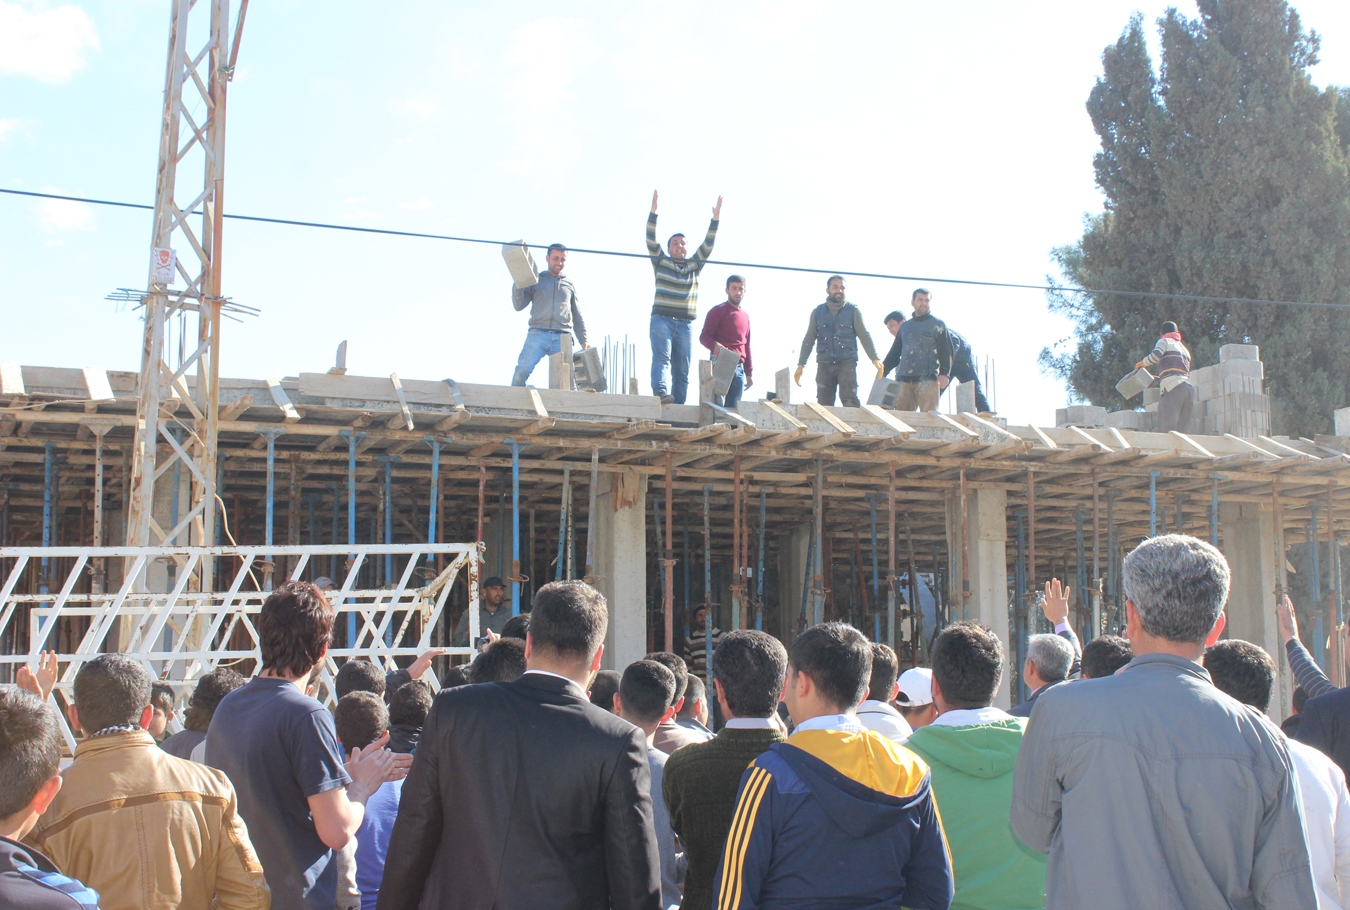 Ceylanpınar'da inşaat yıkım gerginliği (VİDEOLU)